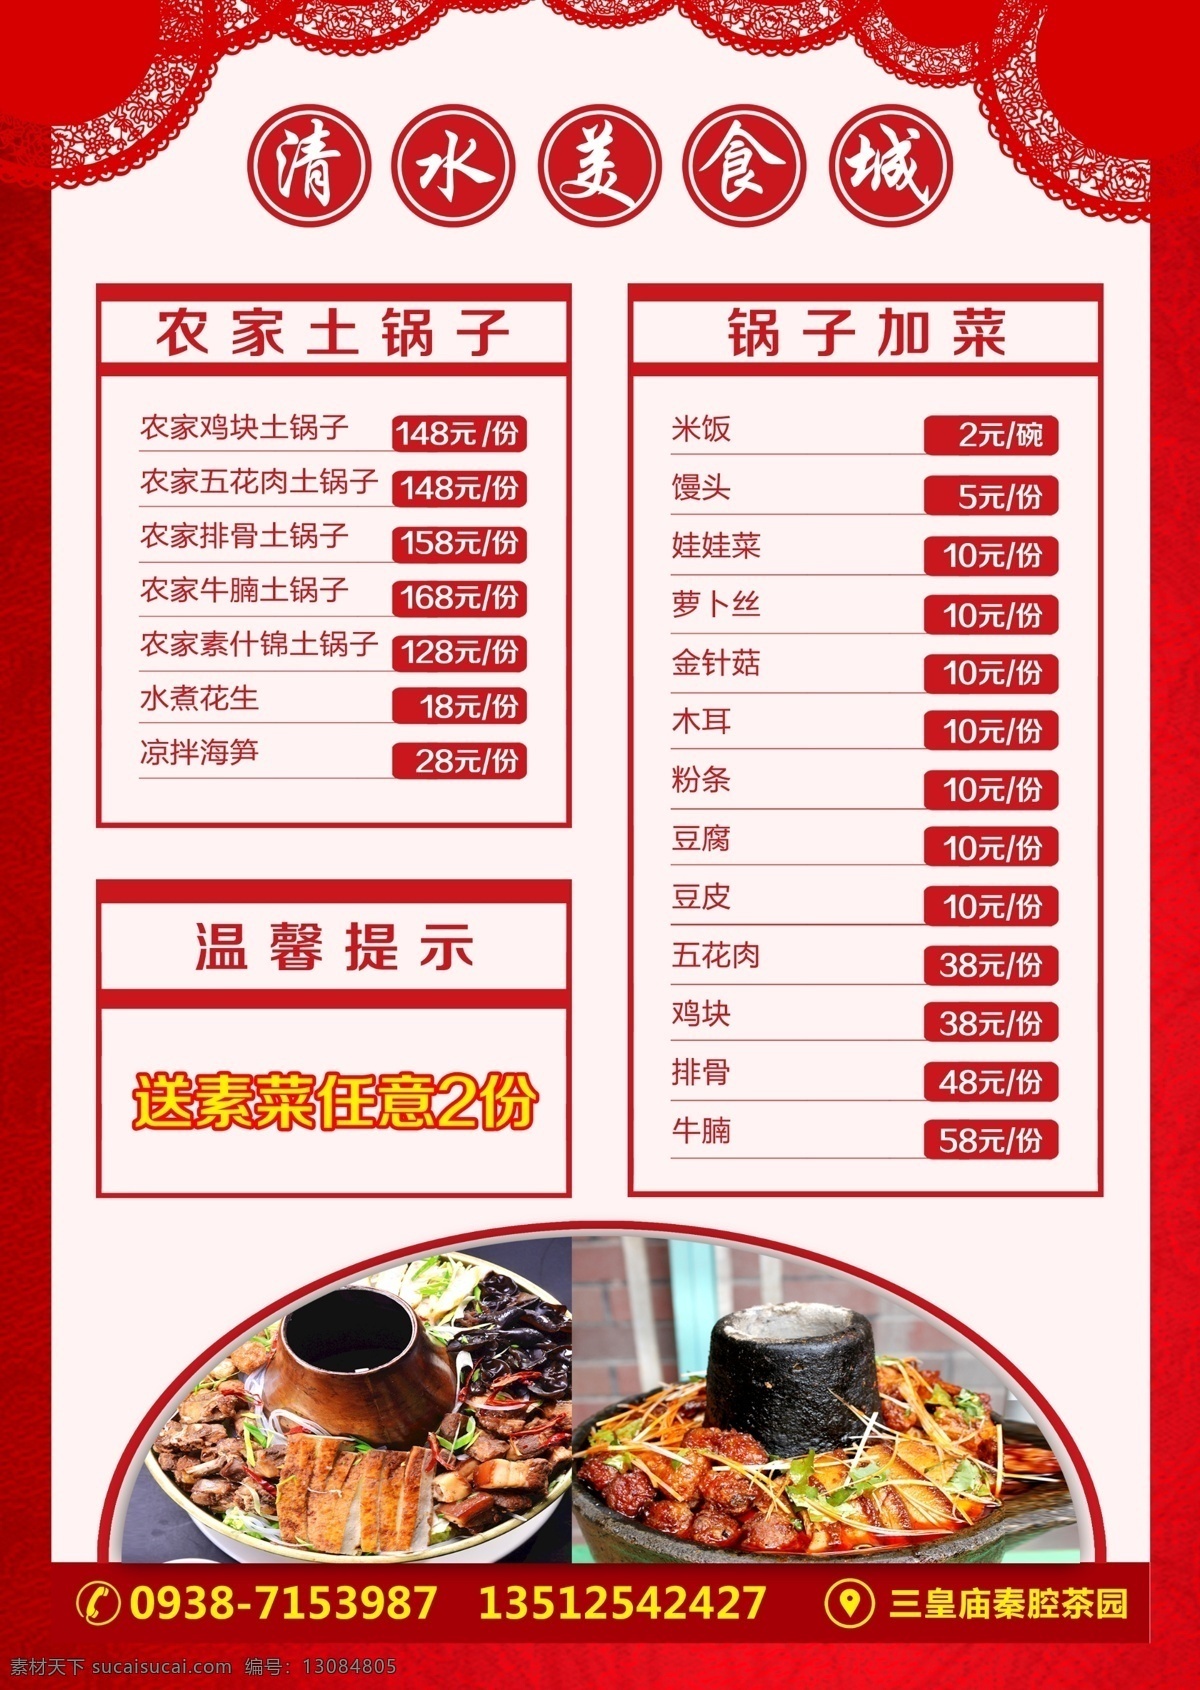 餐馆菜单设计 正图片 菜单 酒水单 红色背景 美食城 暖锅图片